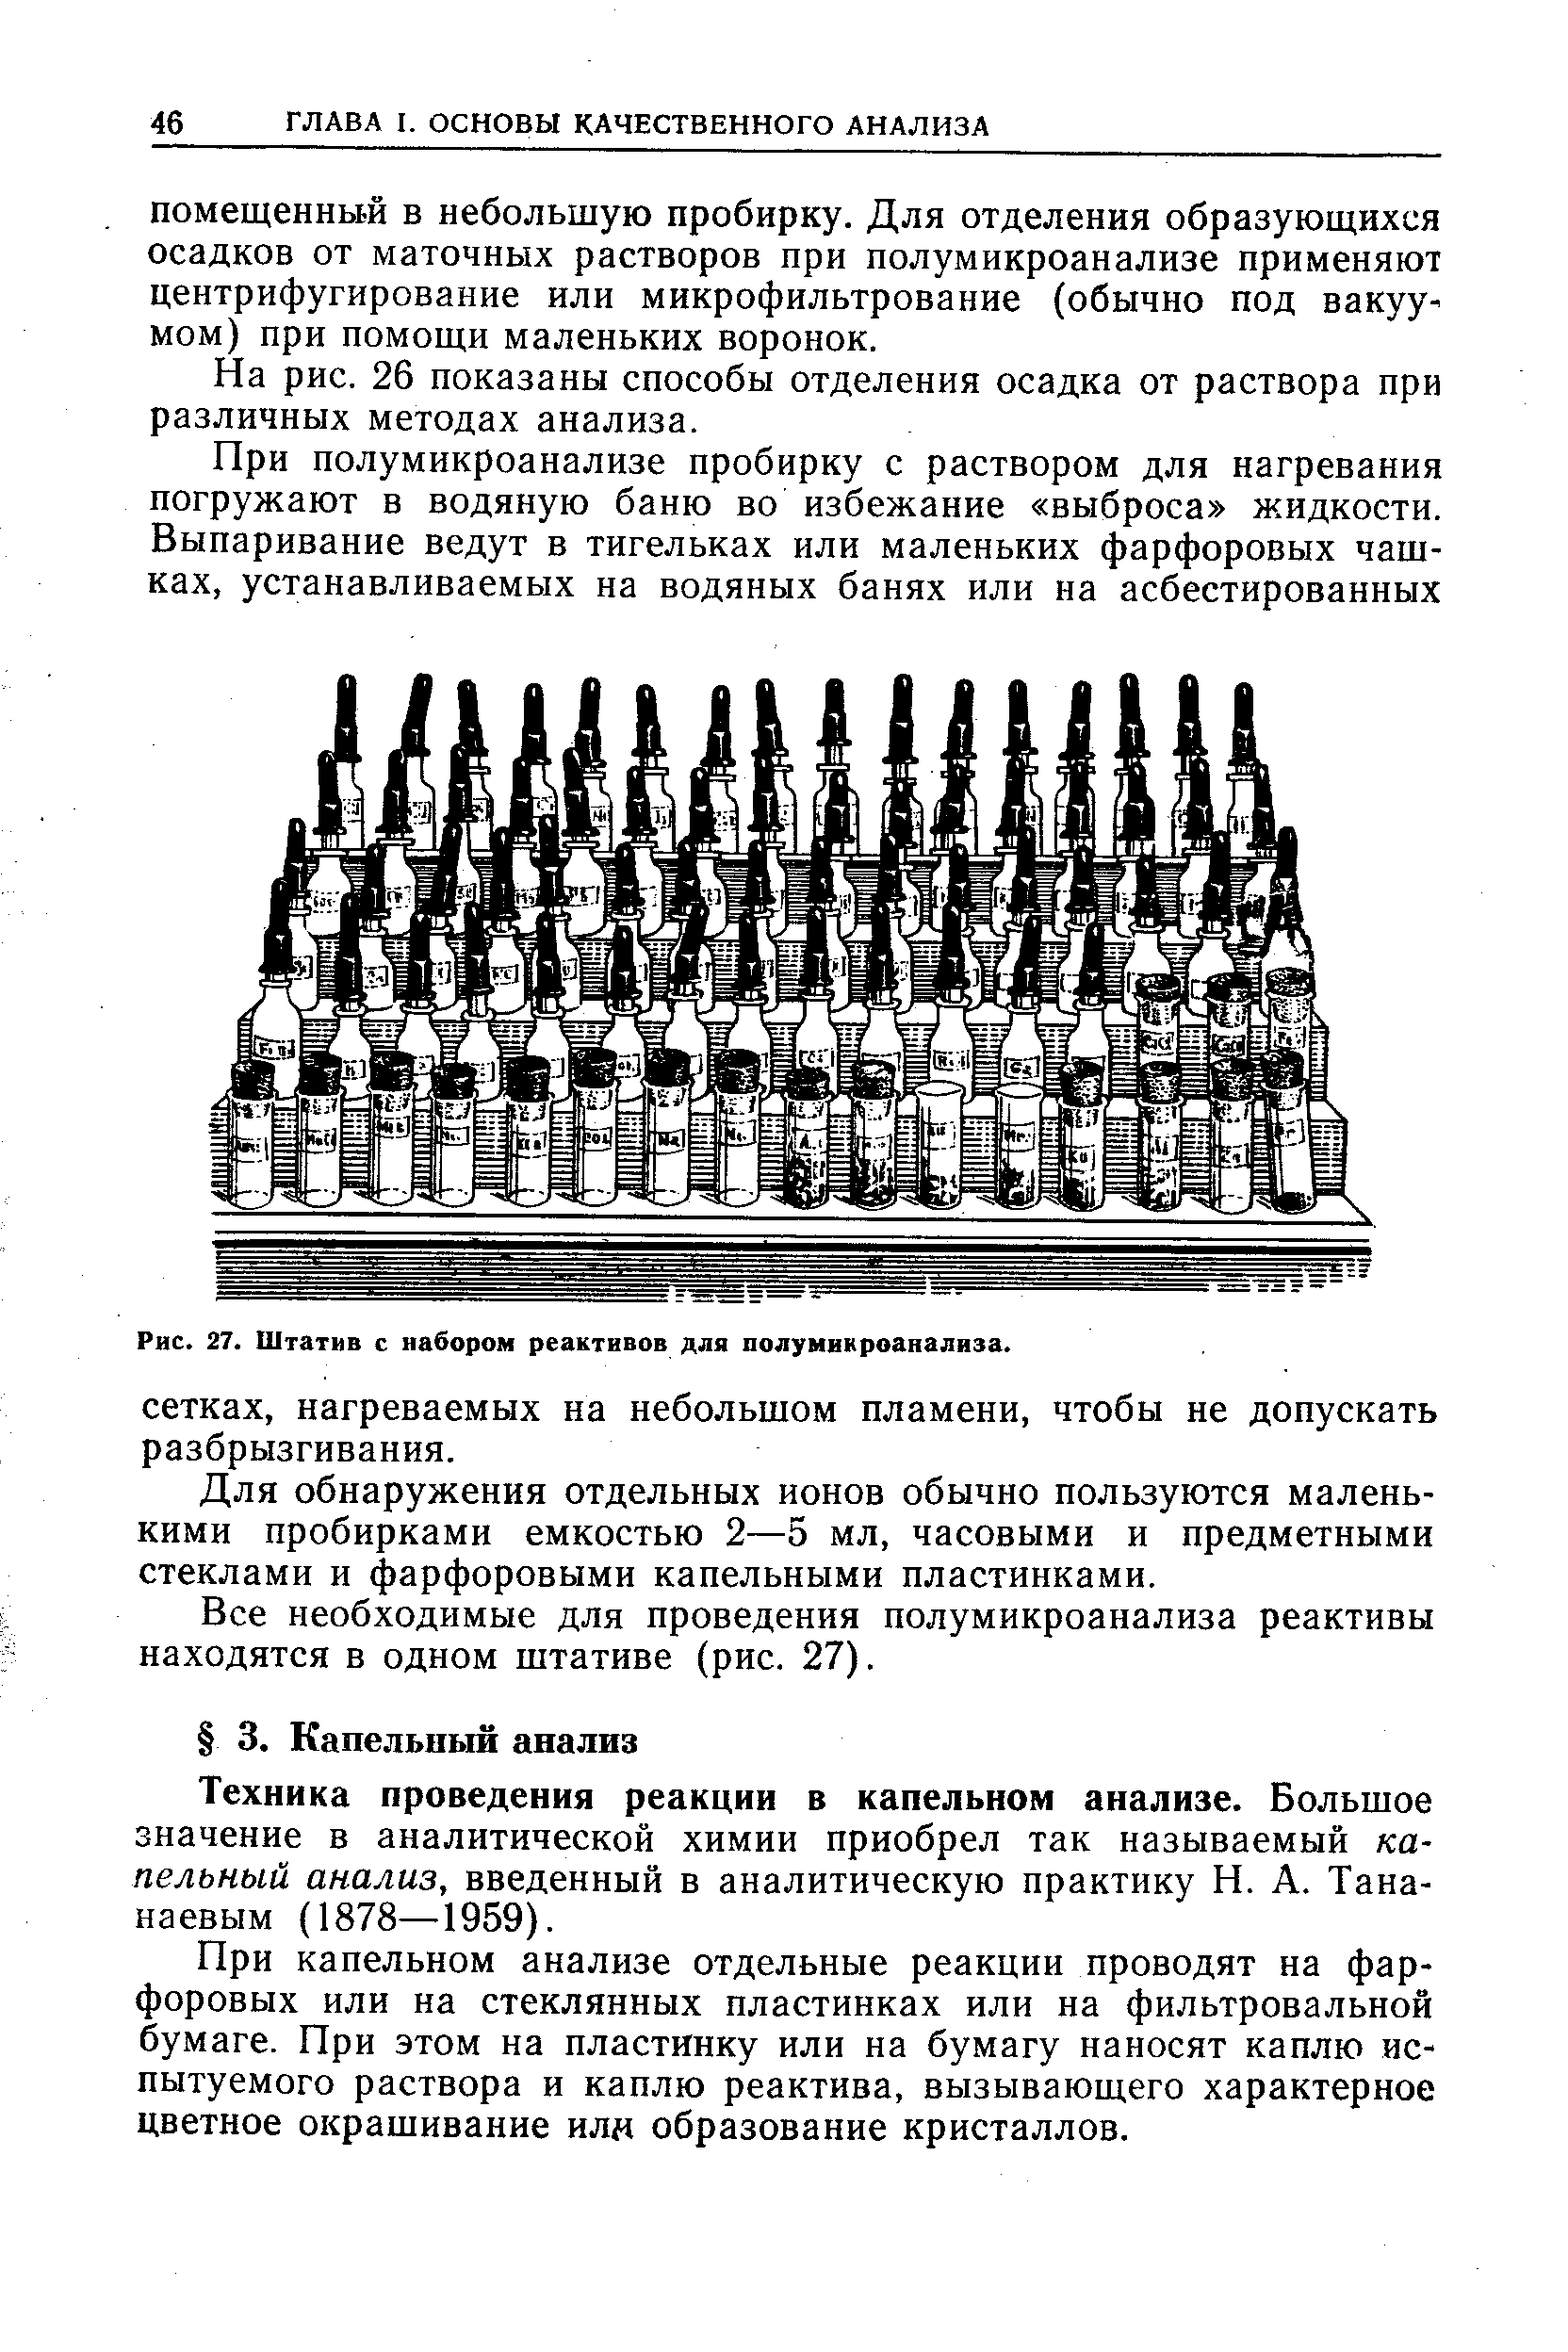 Техника проведения реакции в капельном анализе. Большое значение в аналитической химии приобрел так называемый капельный анализ, введенный в аналитическую практику Н. А. Тана-наевым (1878—1959).